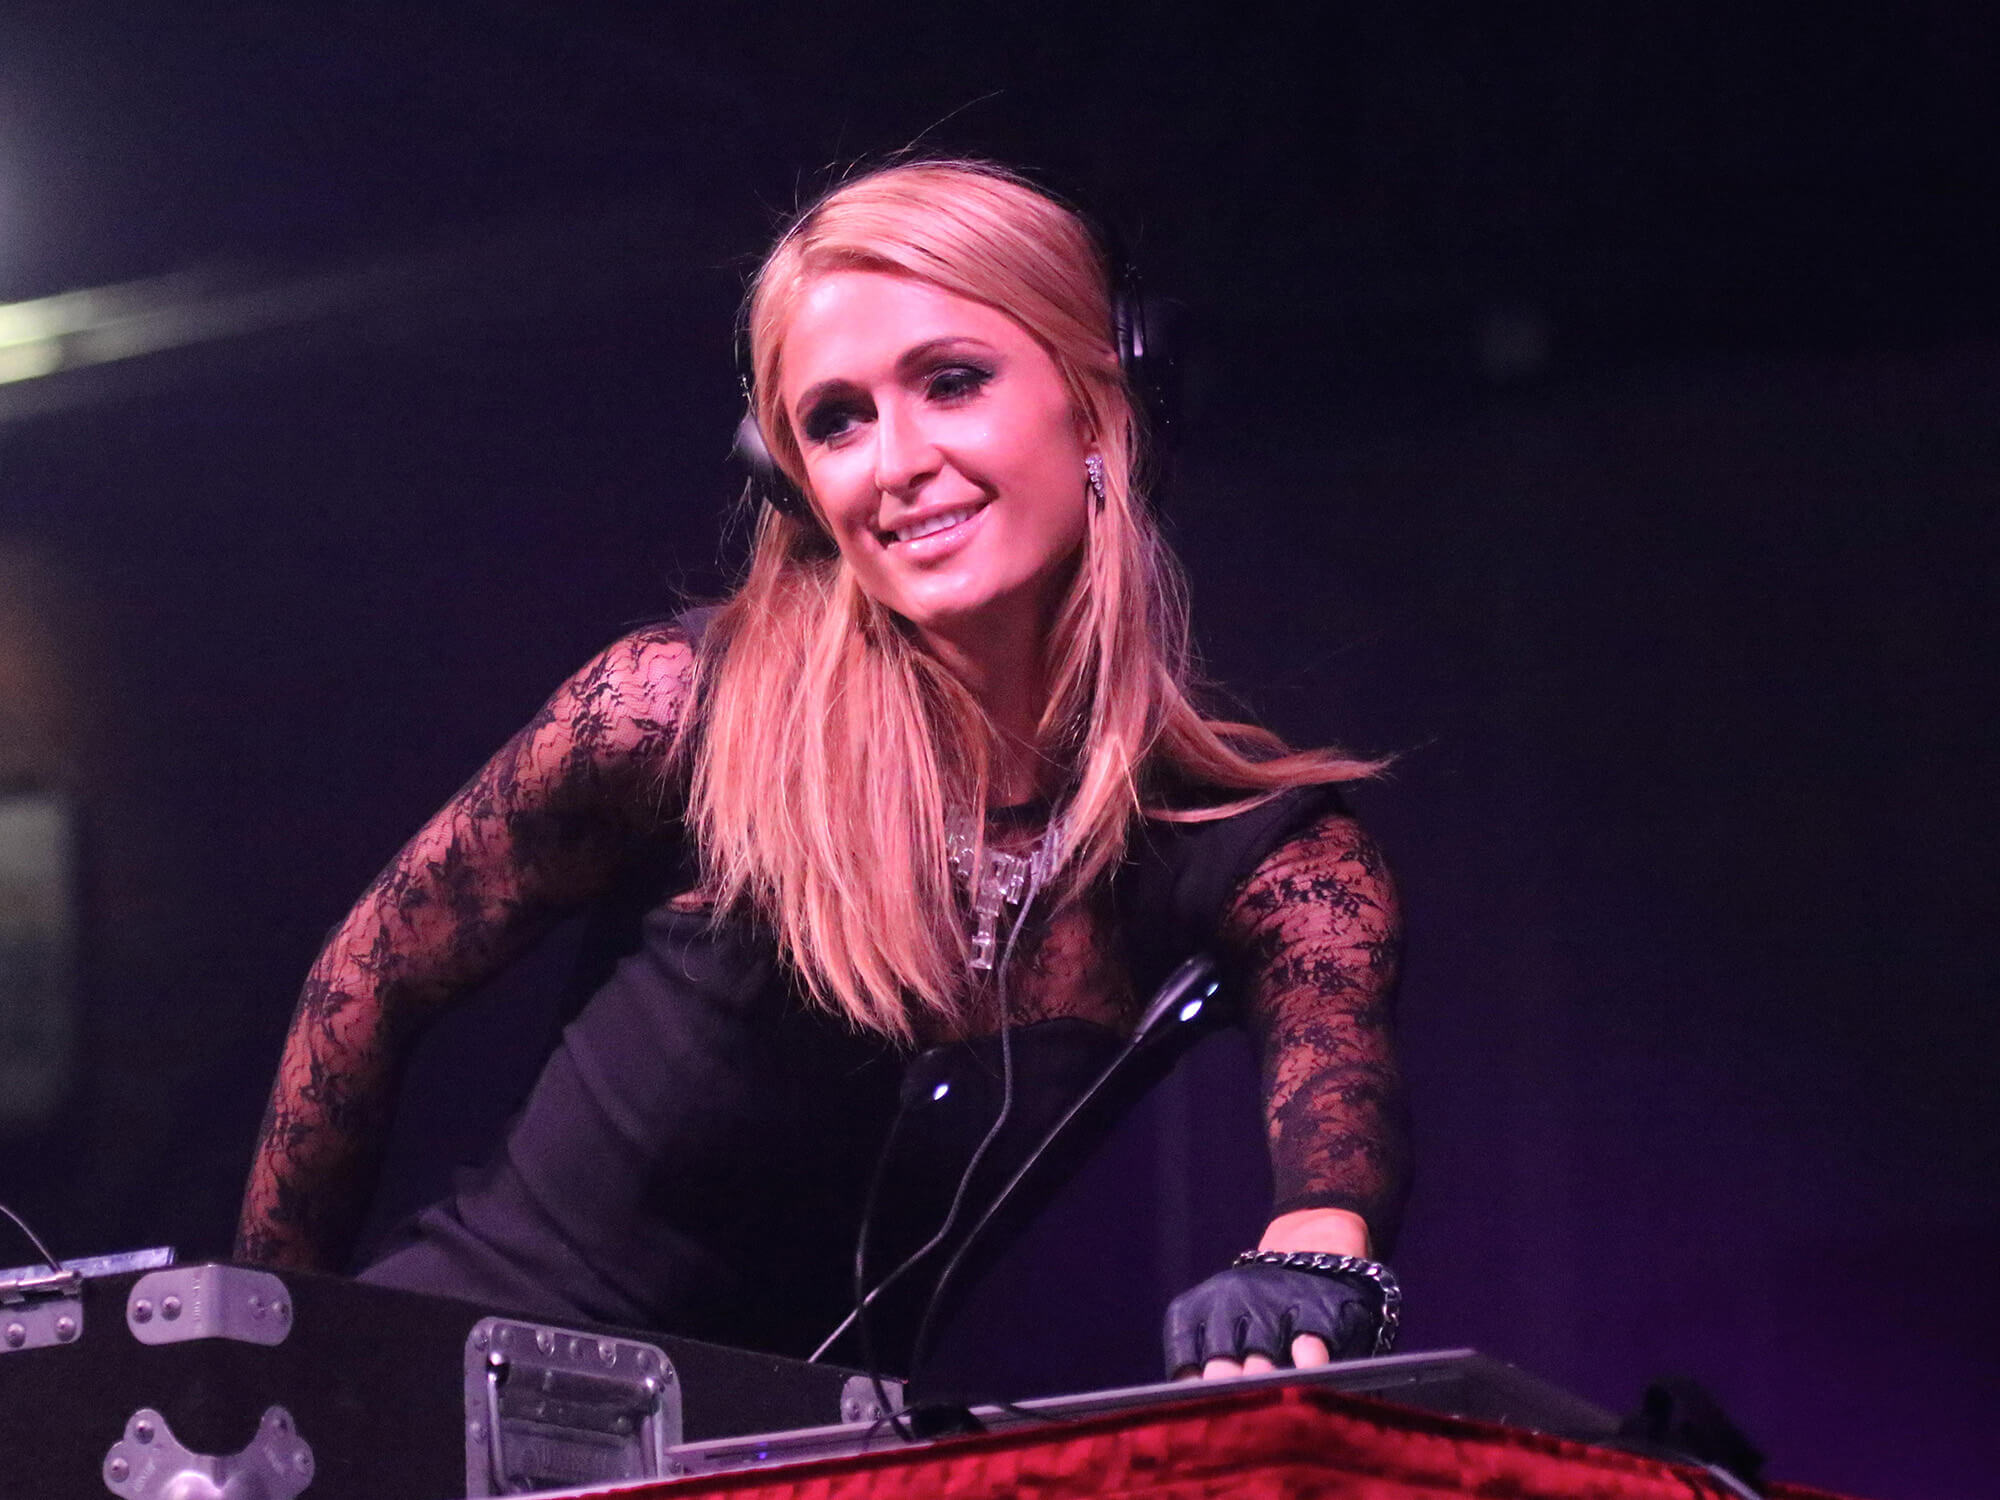 Paris Hilton DJs at a event